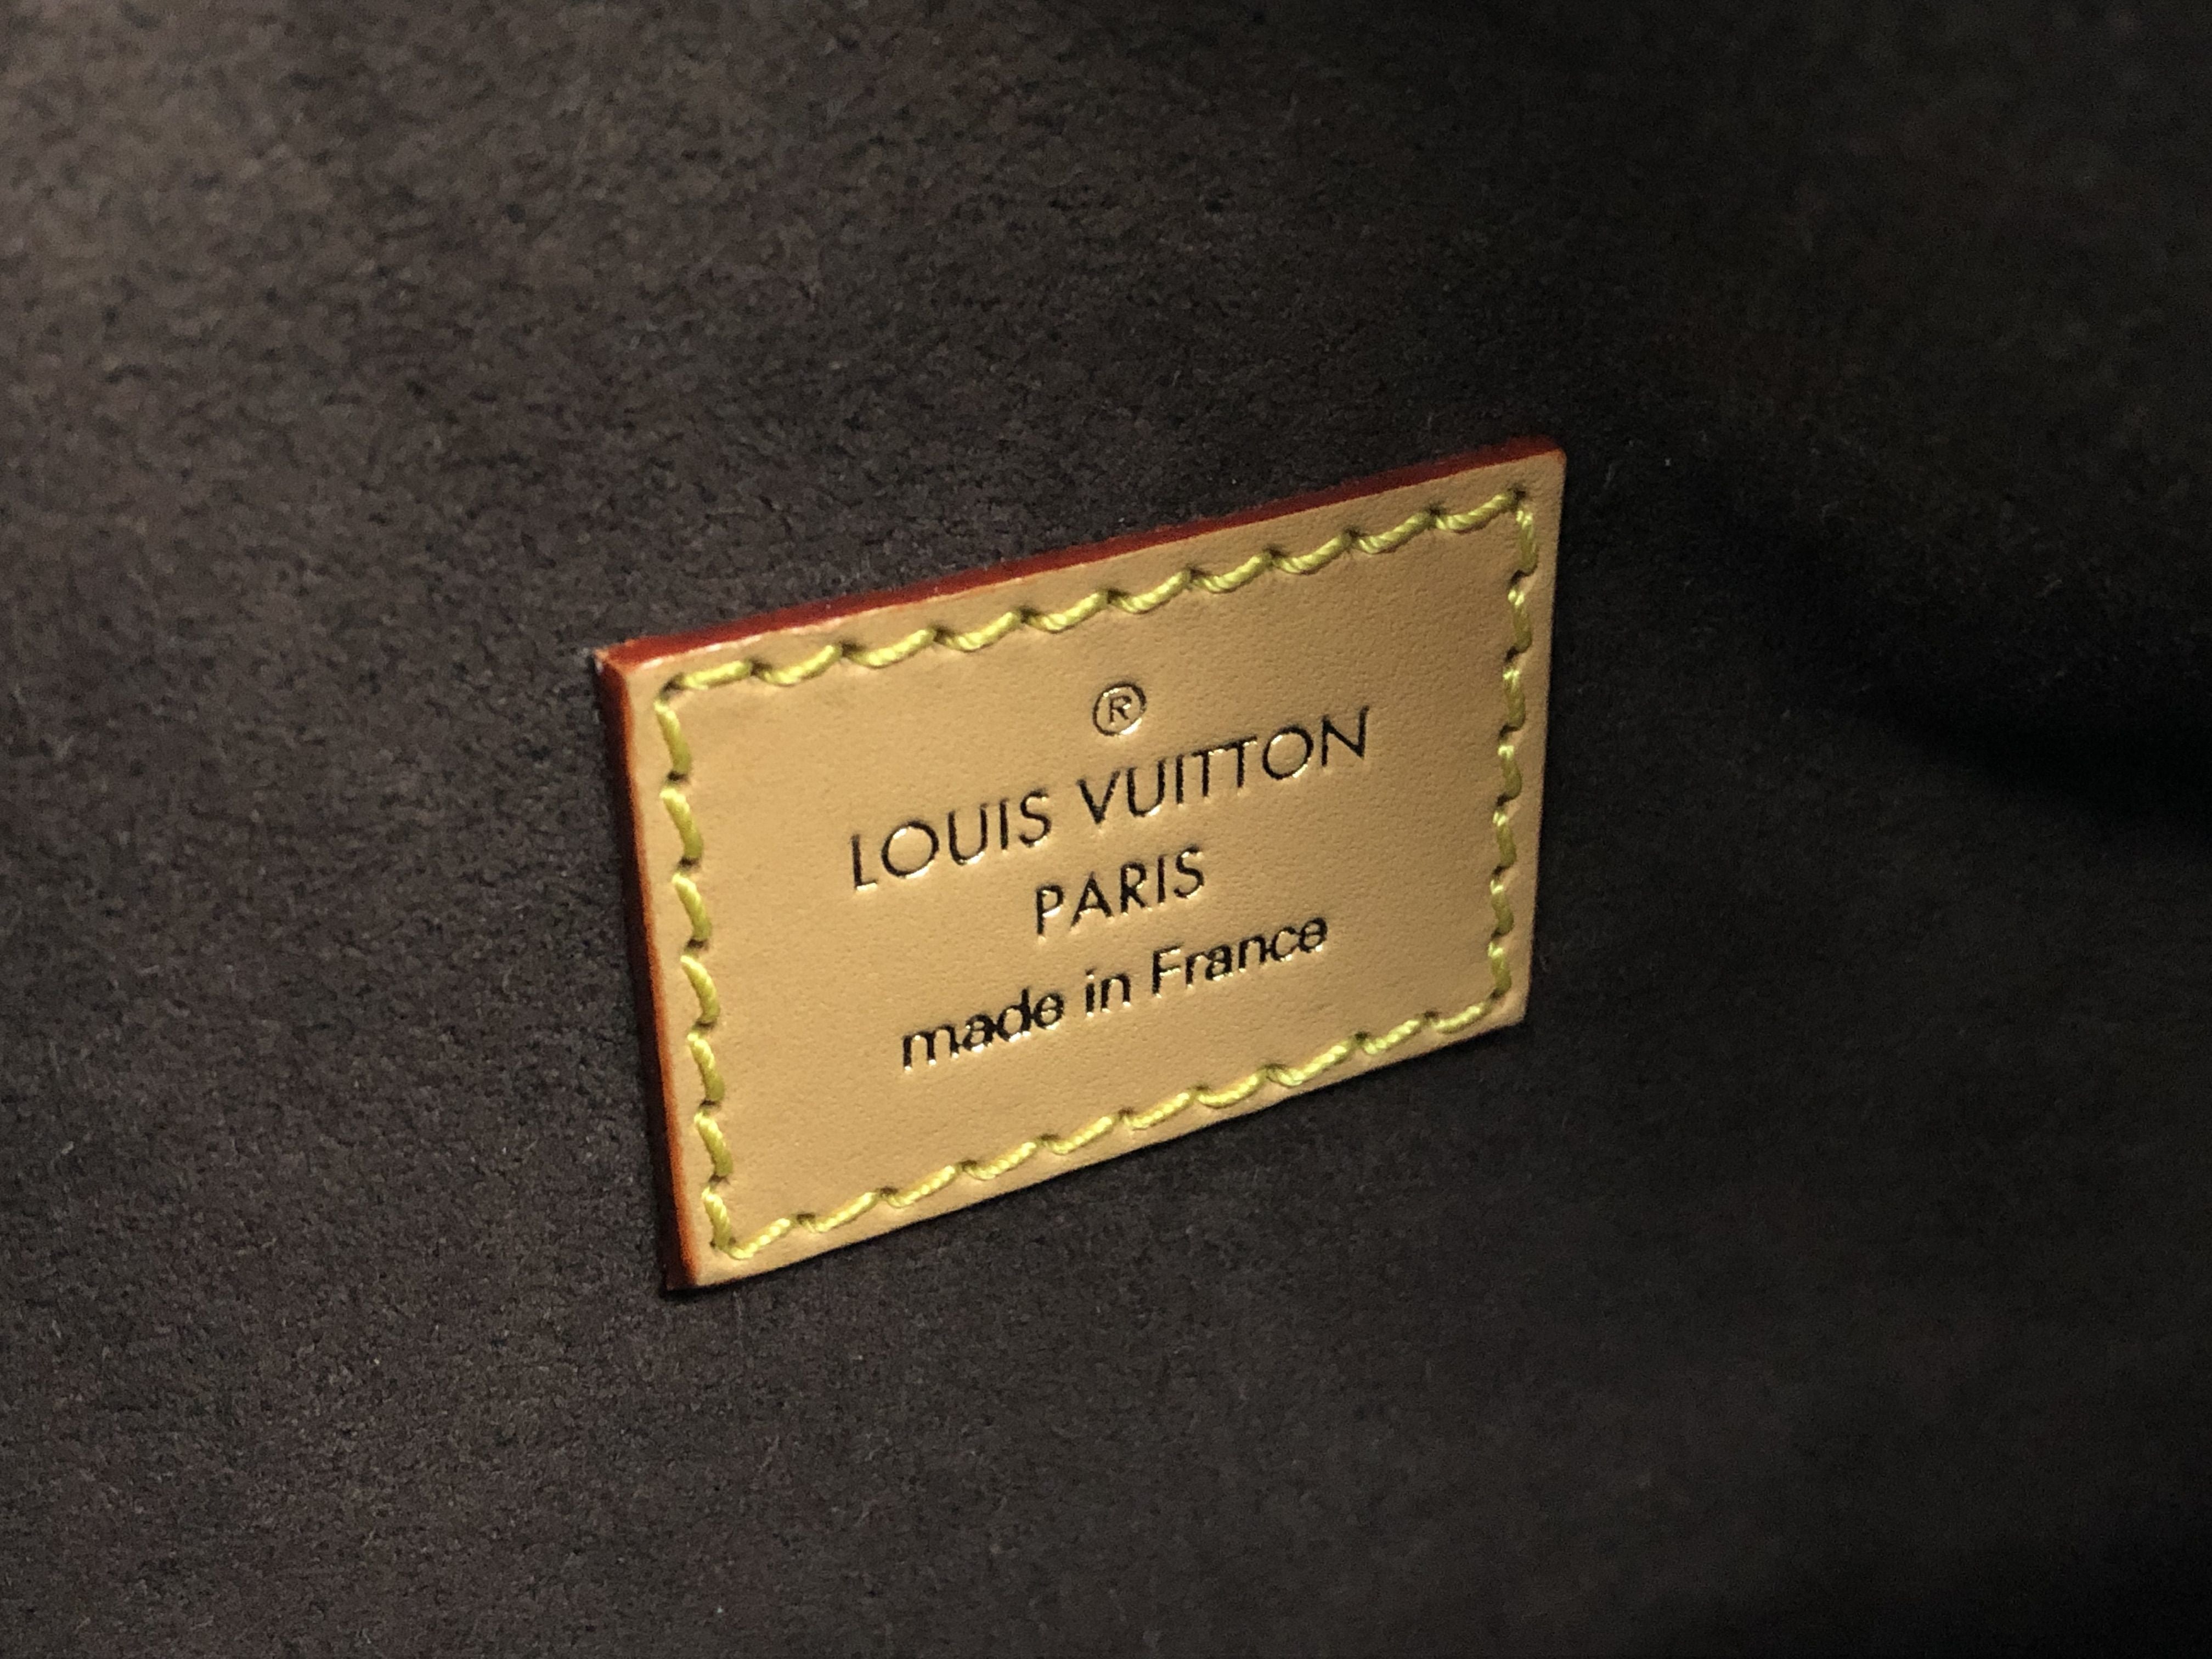 M46358 Louis Vuitton Monogram Canvas Side Trunk PM Handbag